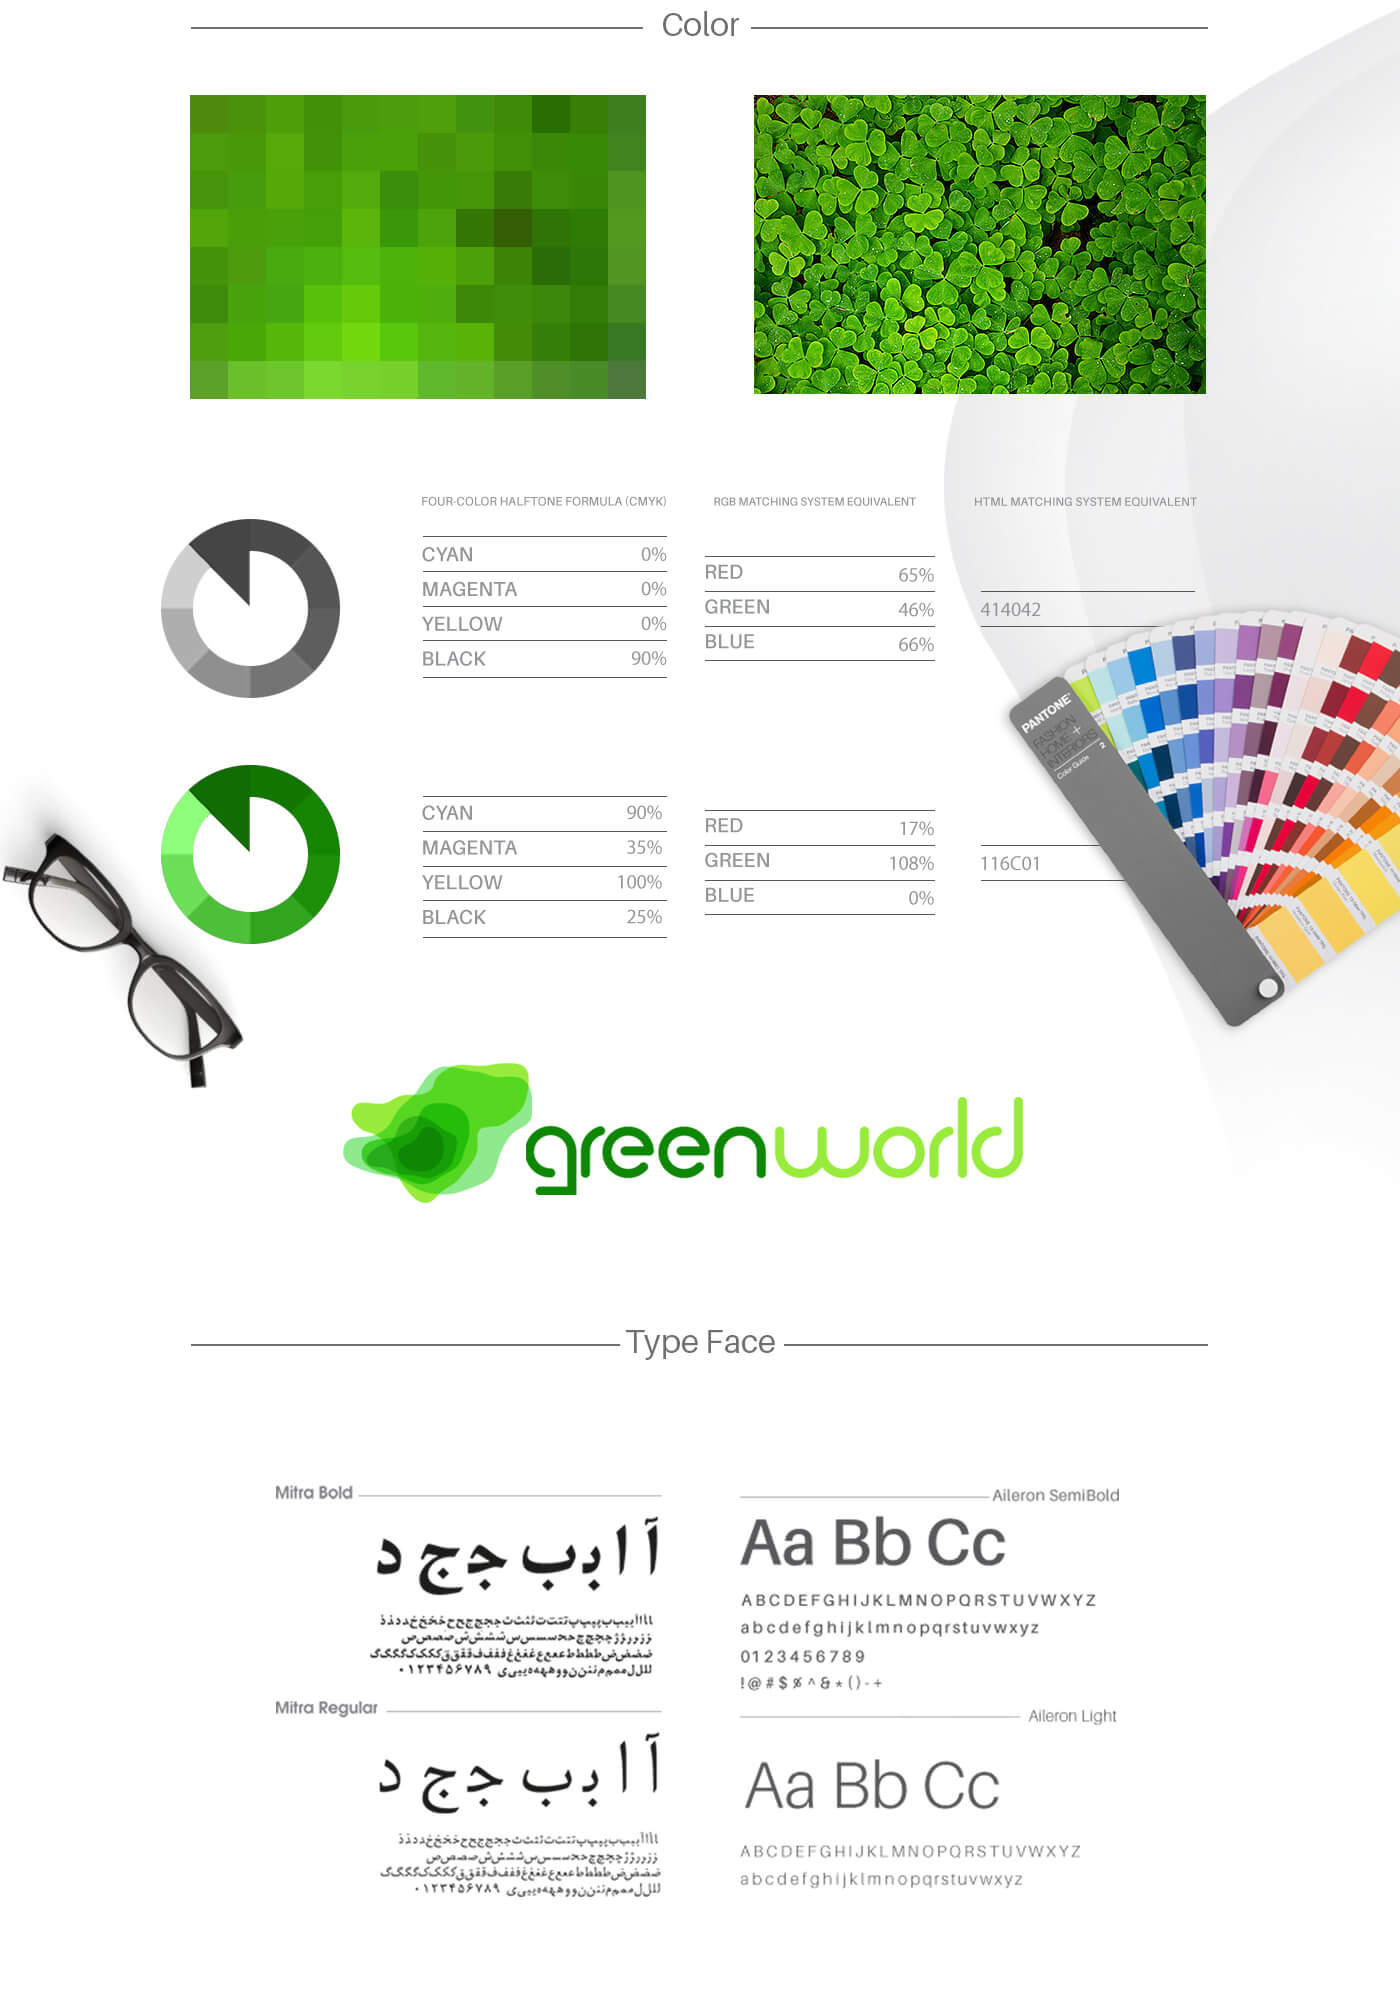 هویت بصری گرین ورلد 2، گرین ورلد، هویت بصری، طراحی هویت بصری، شرکت تبلیغاتی الف، طراحی لوگو، طراحی لوگوتابپ، طراحی ست اداری، طراحی اوراق اداری